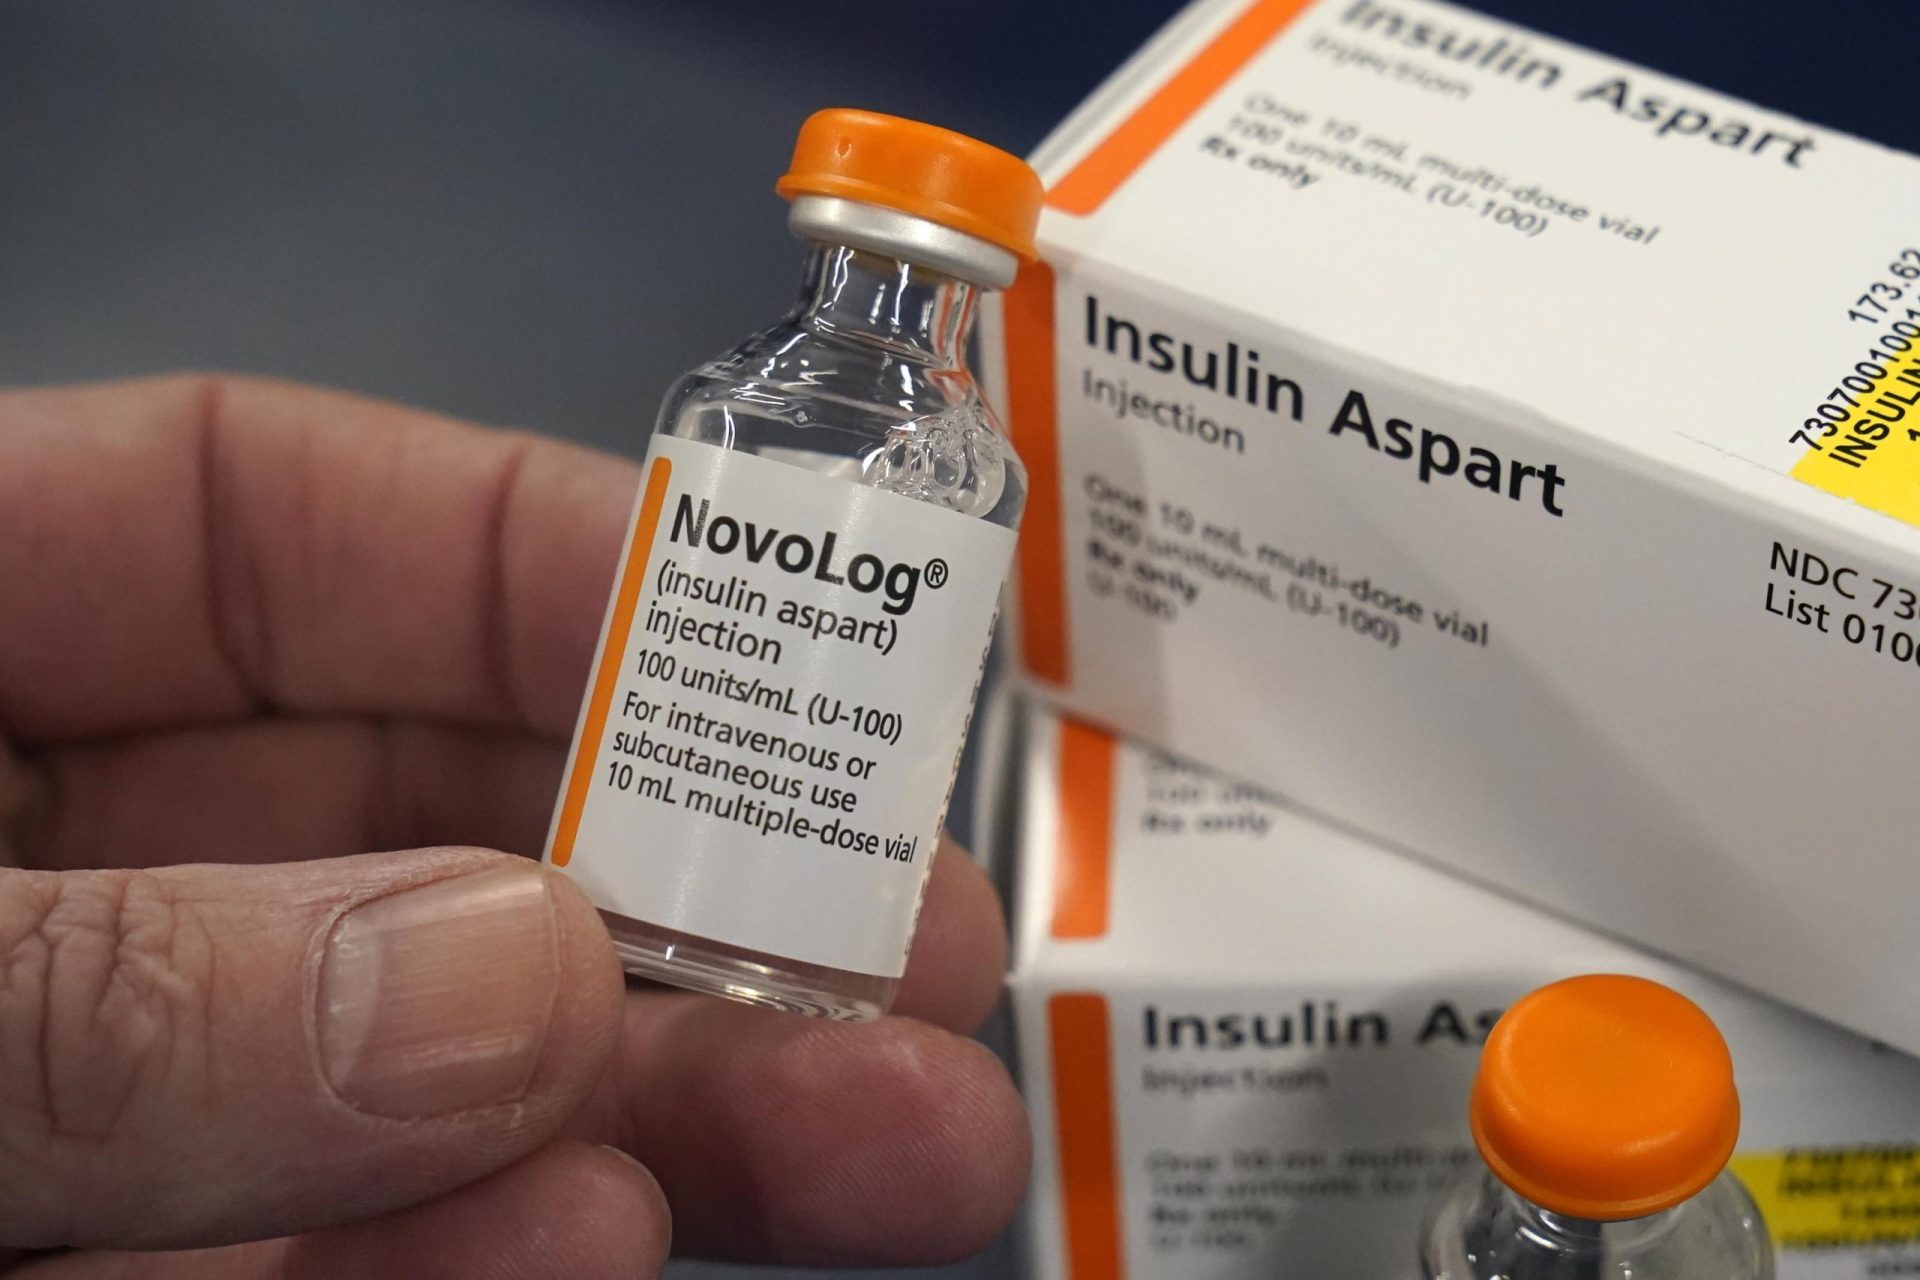 El límite de insulina para pacientes de Medicare indica esperanza para otros